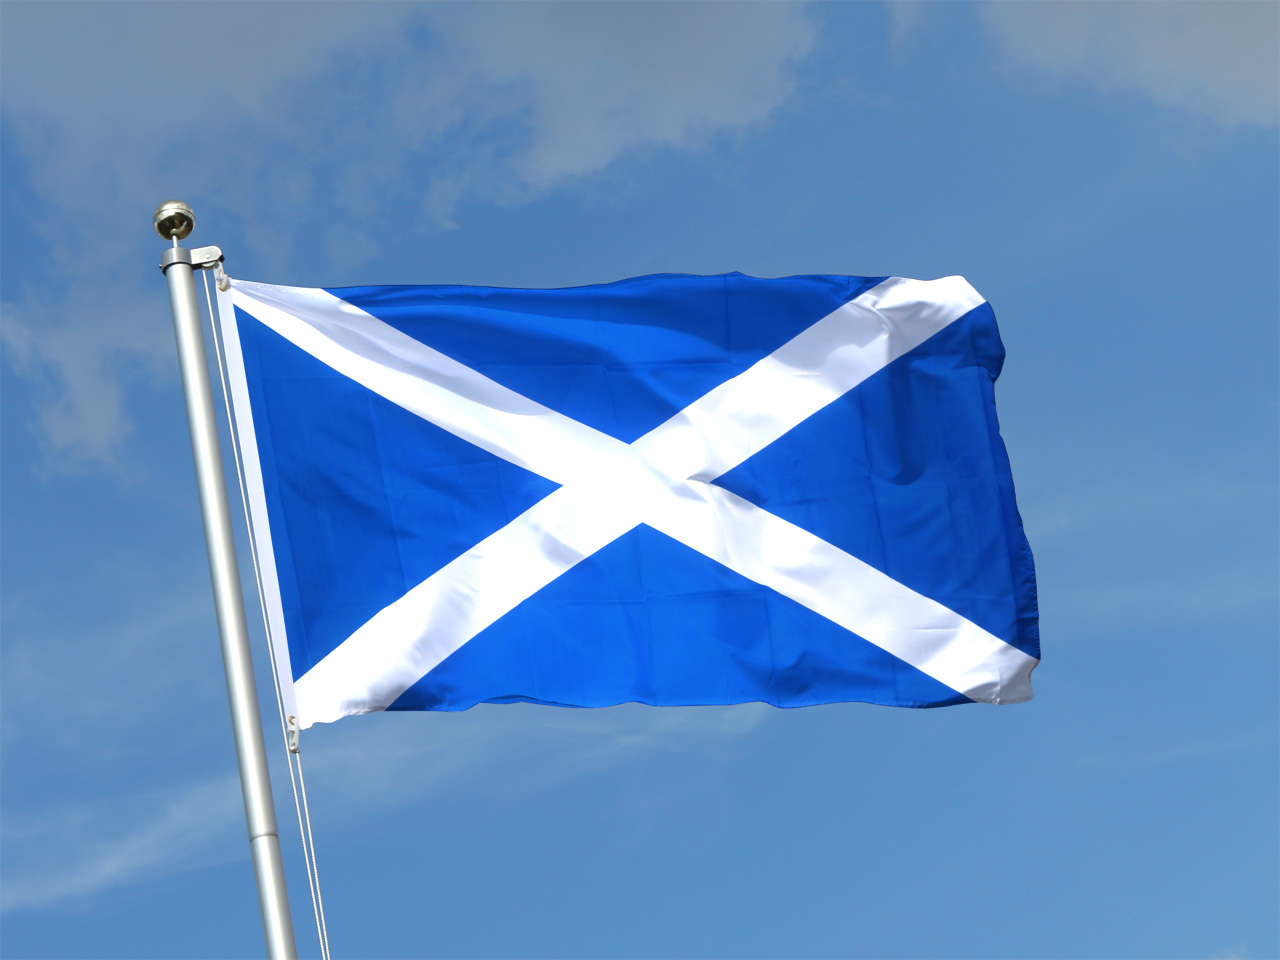 Drapeau drapeaux Écosse National Drapeau 150x250cm